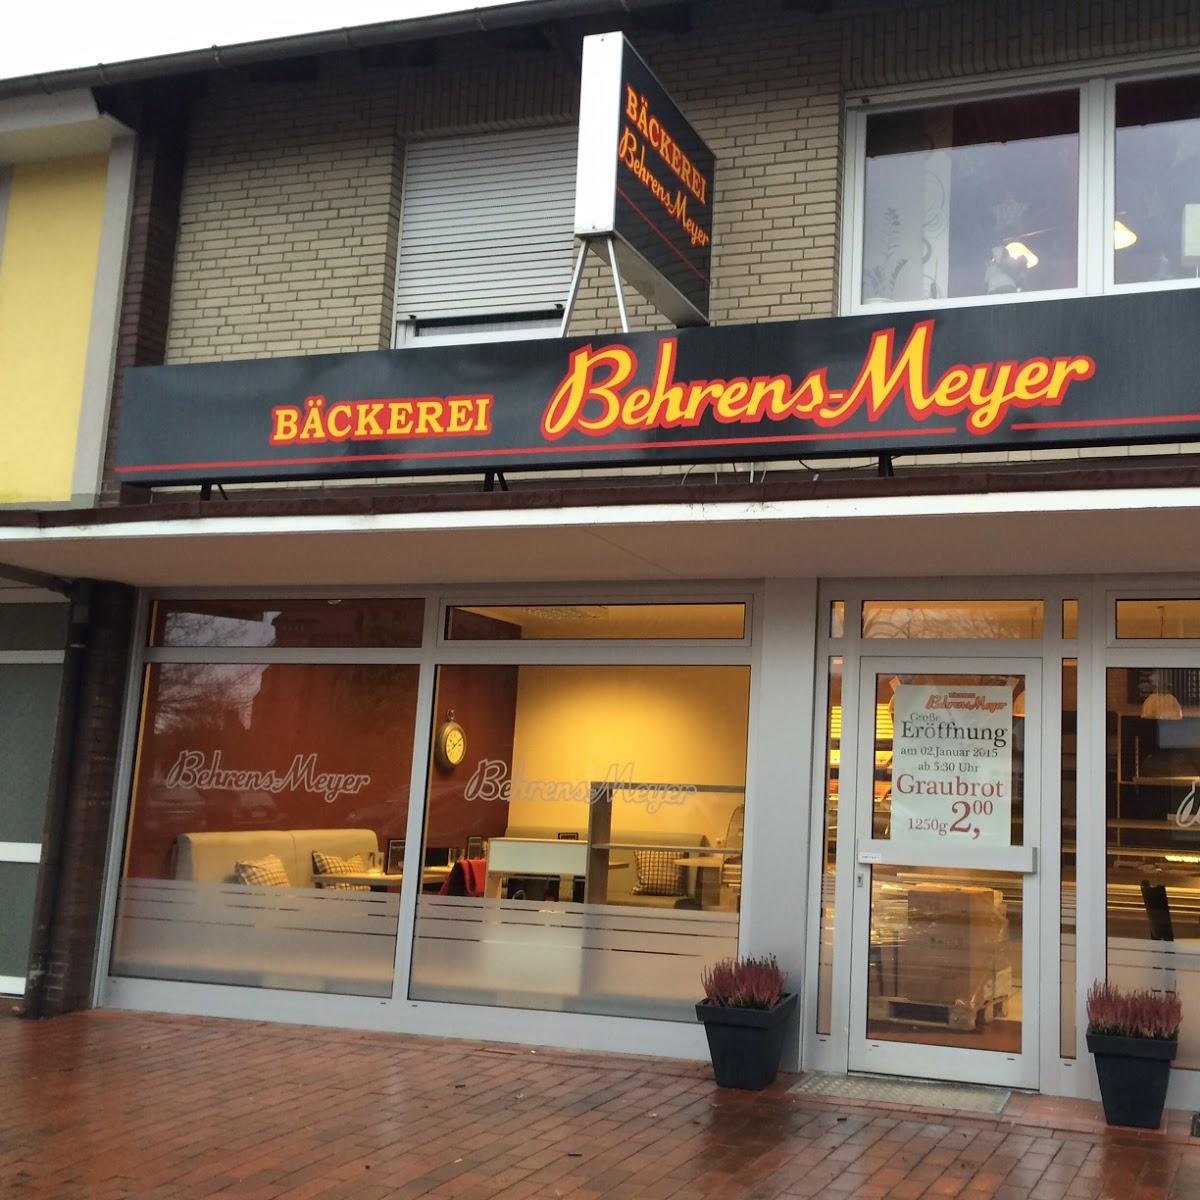 Restaurant "Bäckerei & Konditorei Behrens-Meyer" in  Molbergen